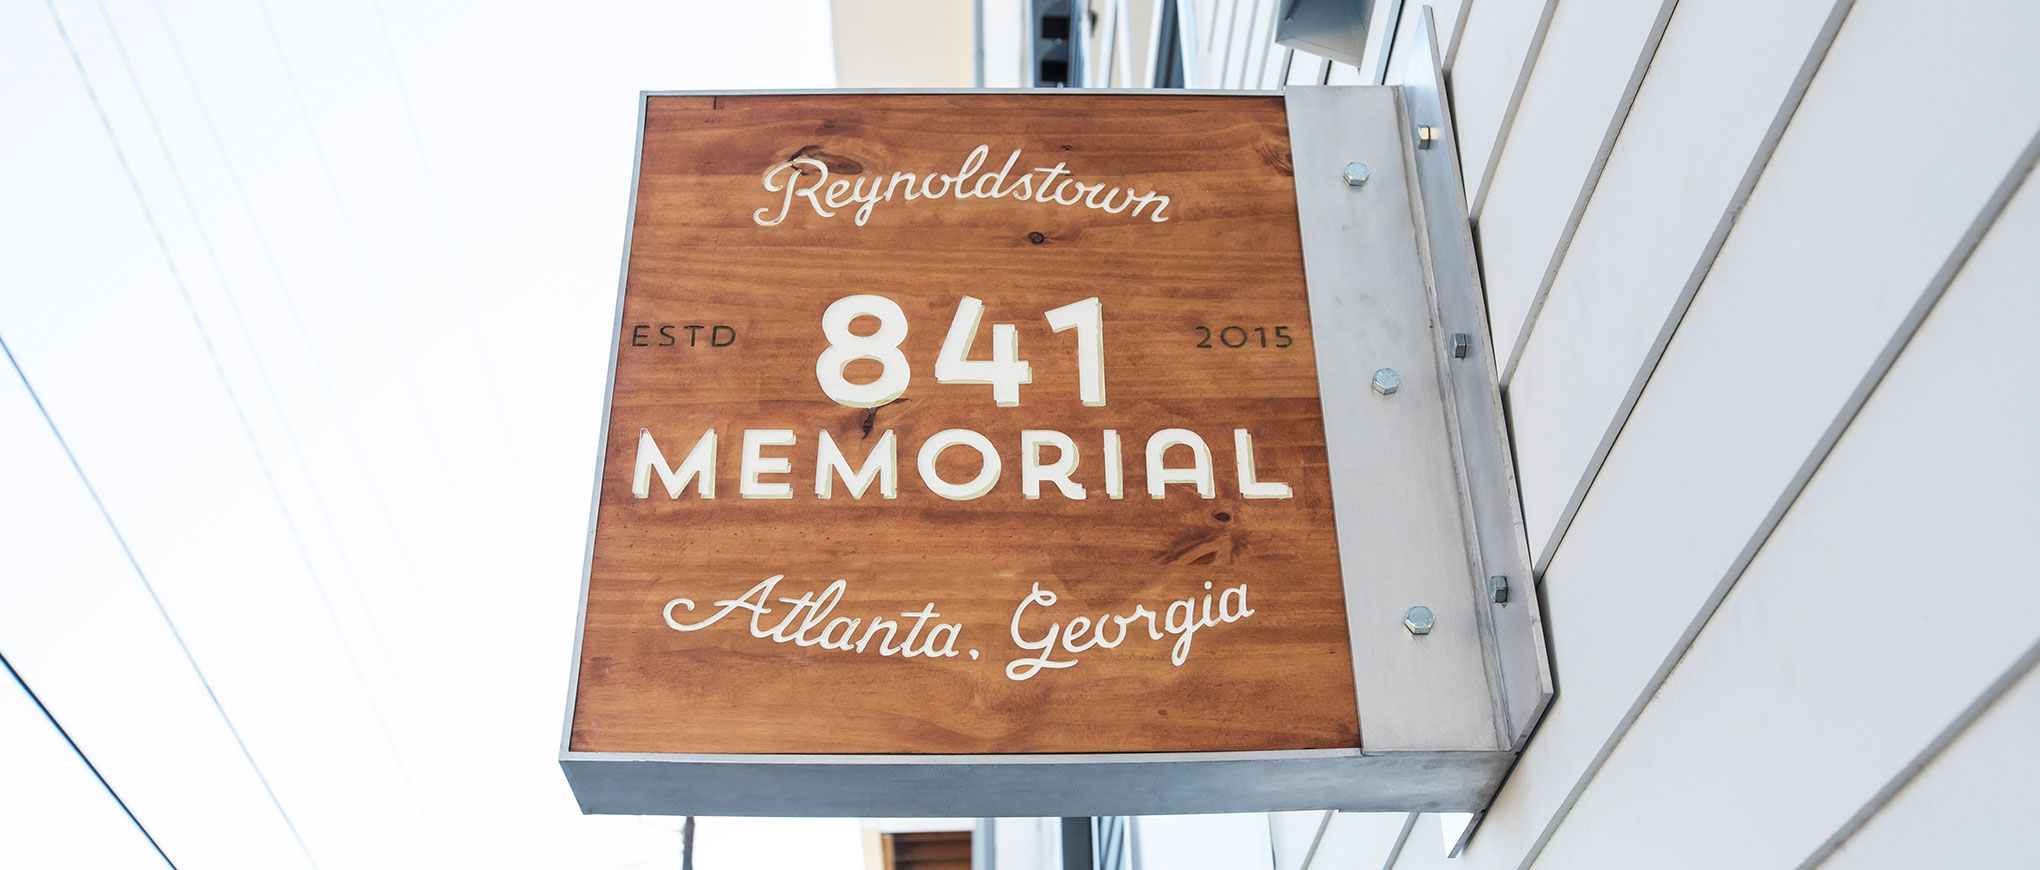 841 Memorial